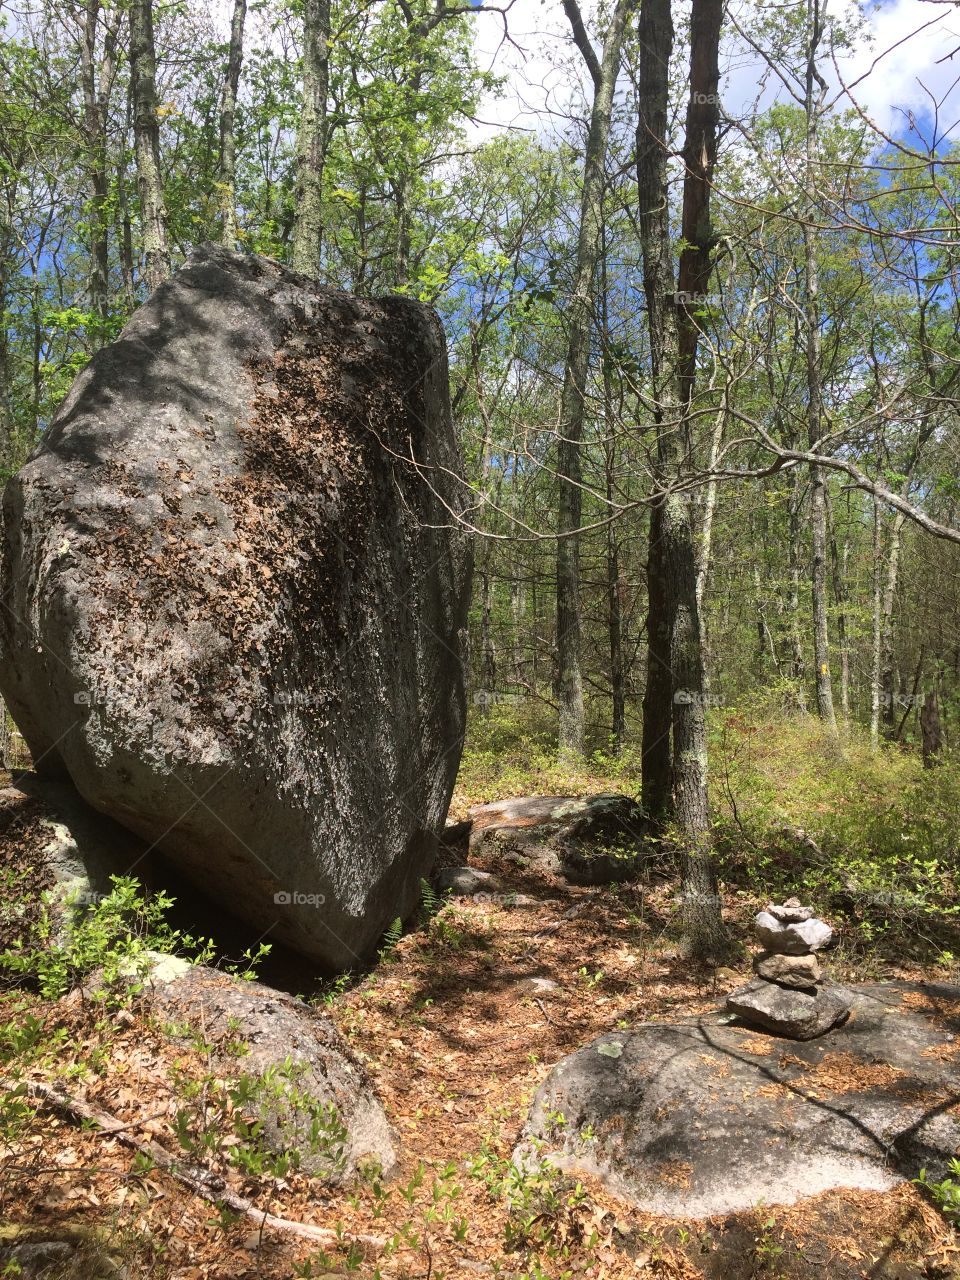 Large boulder in forest